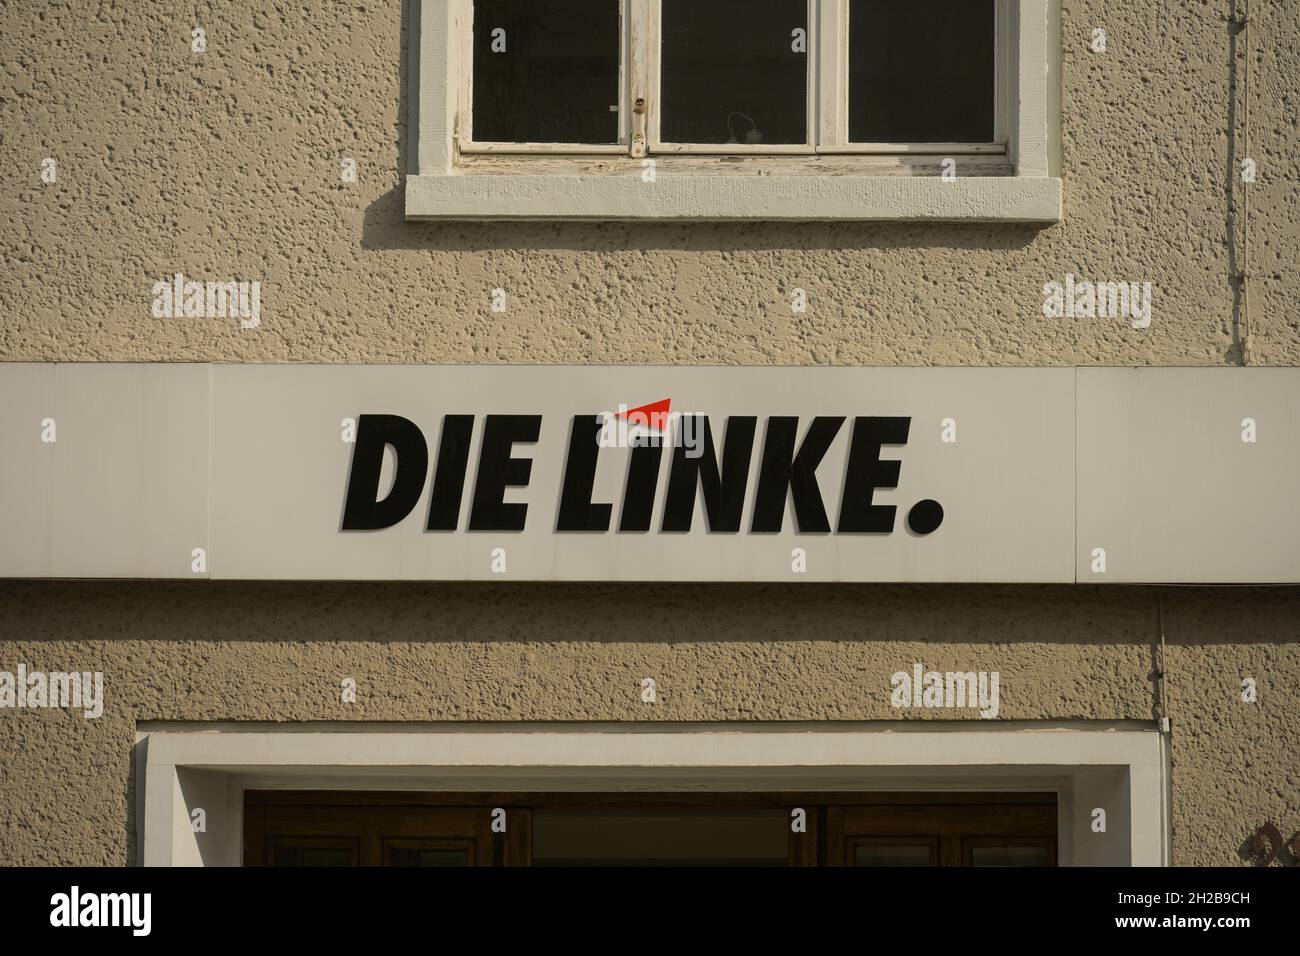 Bundesgeschäftsstelle Partei Die Linke, Karl-Liebknecht-Haus, Kleine Alexanderstraße, Mitte, Berlin, Deutschland Stock Photo